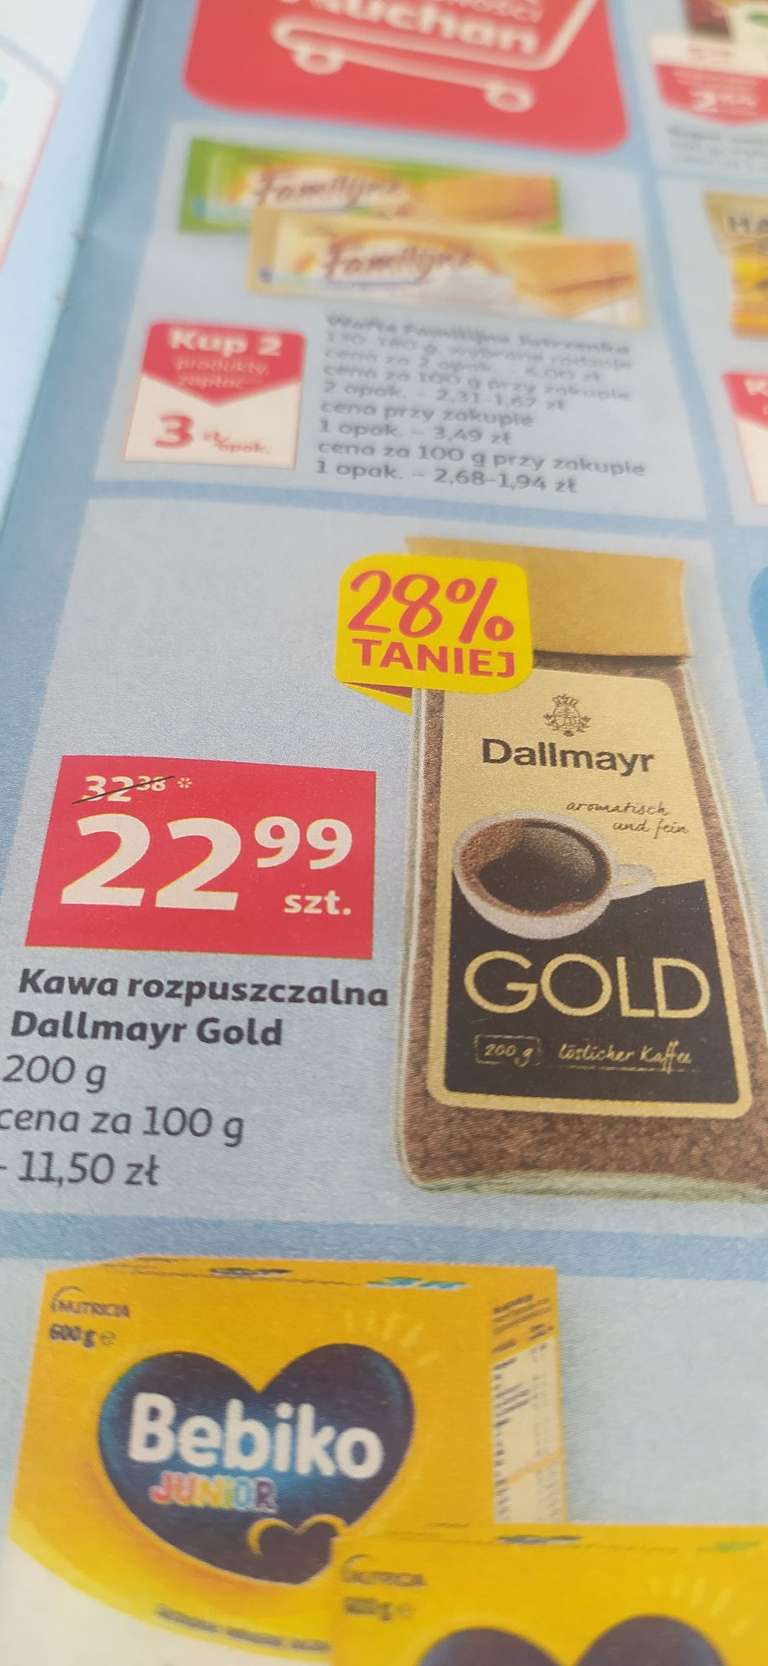 Kawa rozpuszczalna Dallmayr Gold 200g